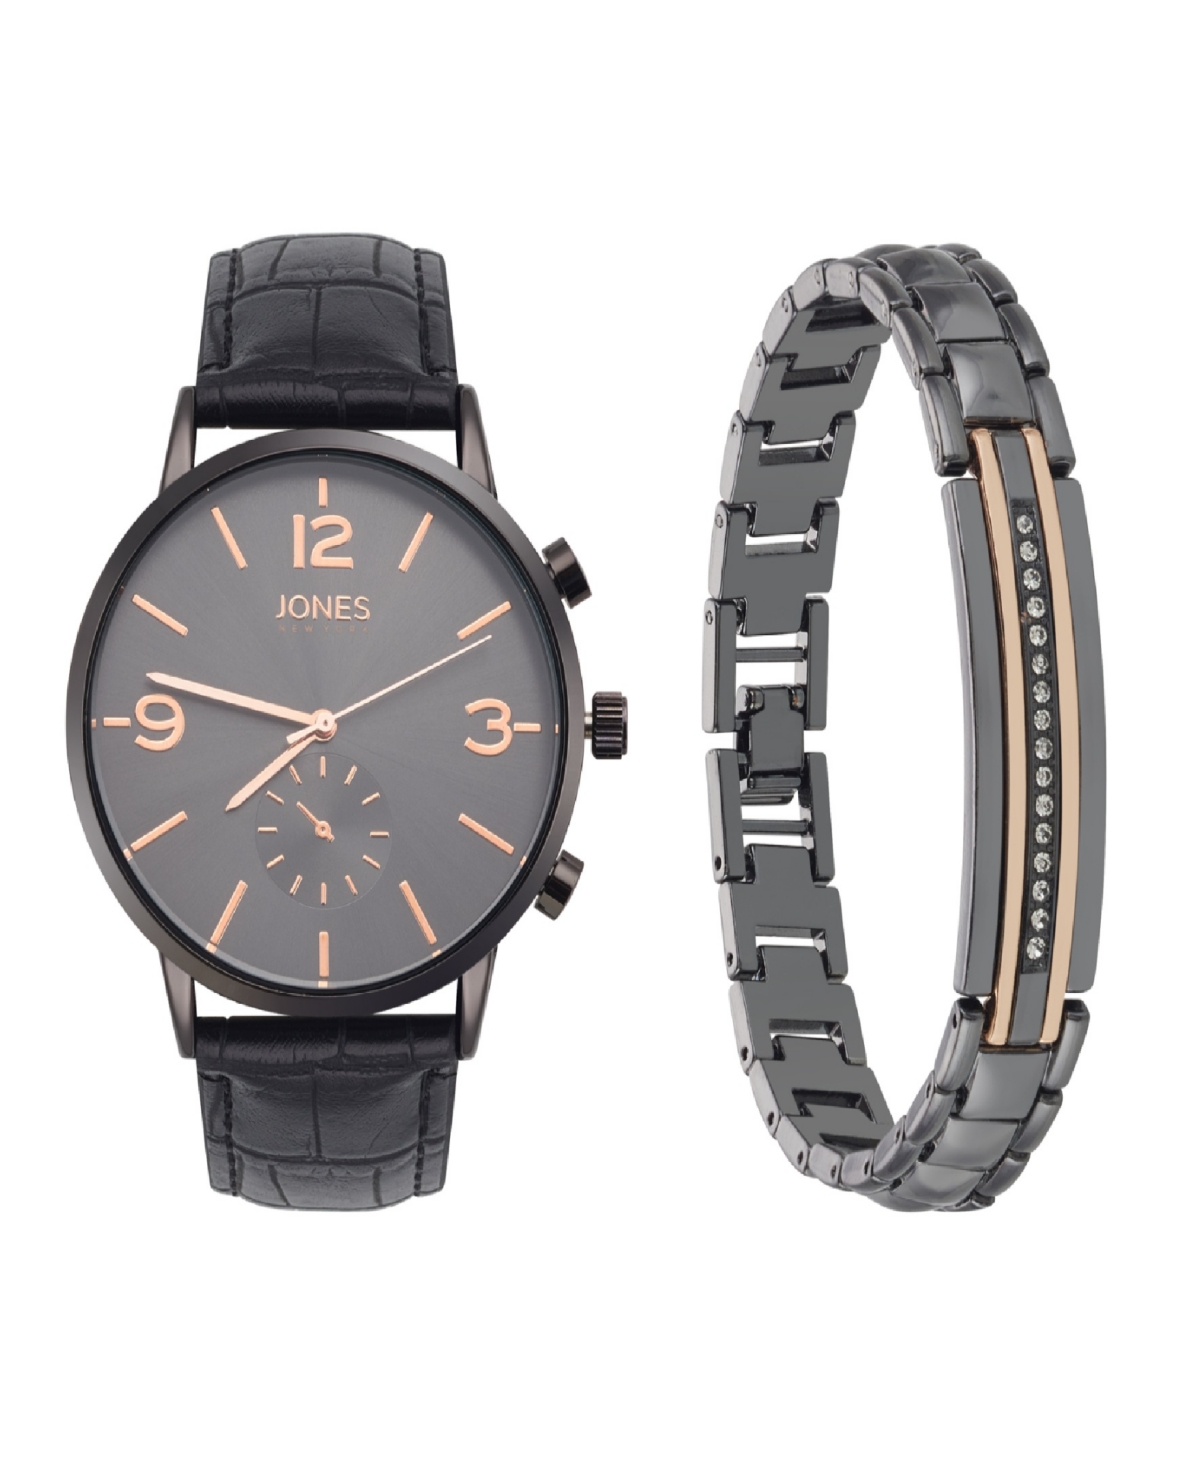 Men's Analog Black Croc Leather Strap Watch 42mm Bracelet Gift Set - Black